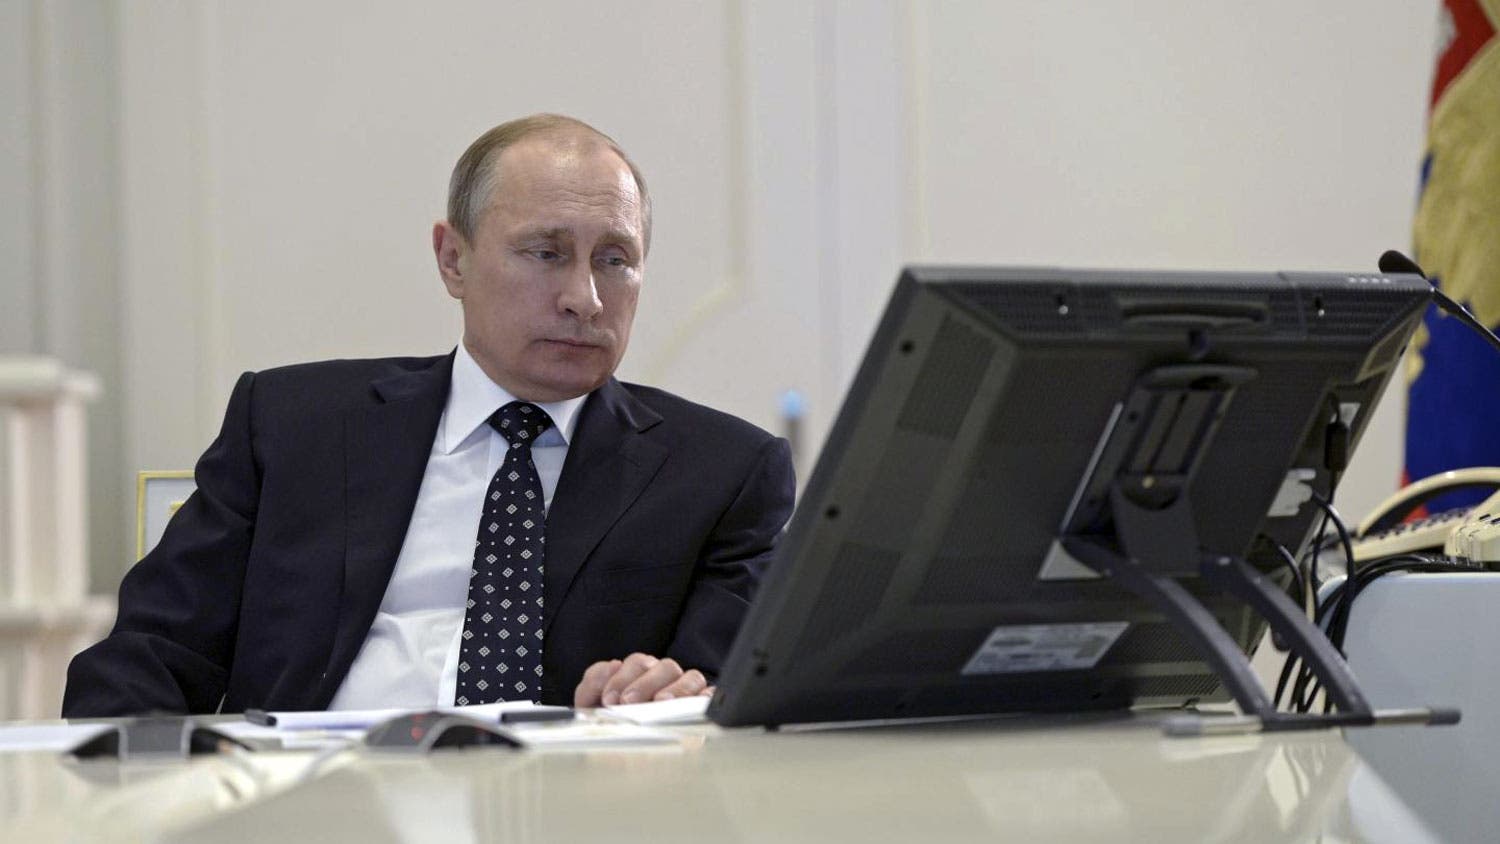 Putin no es usuario avanzado pero busca en internet todo lo que necesita,  dice el Kremlin | Diario Digital Nuestro País